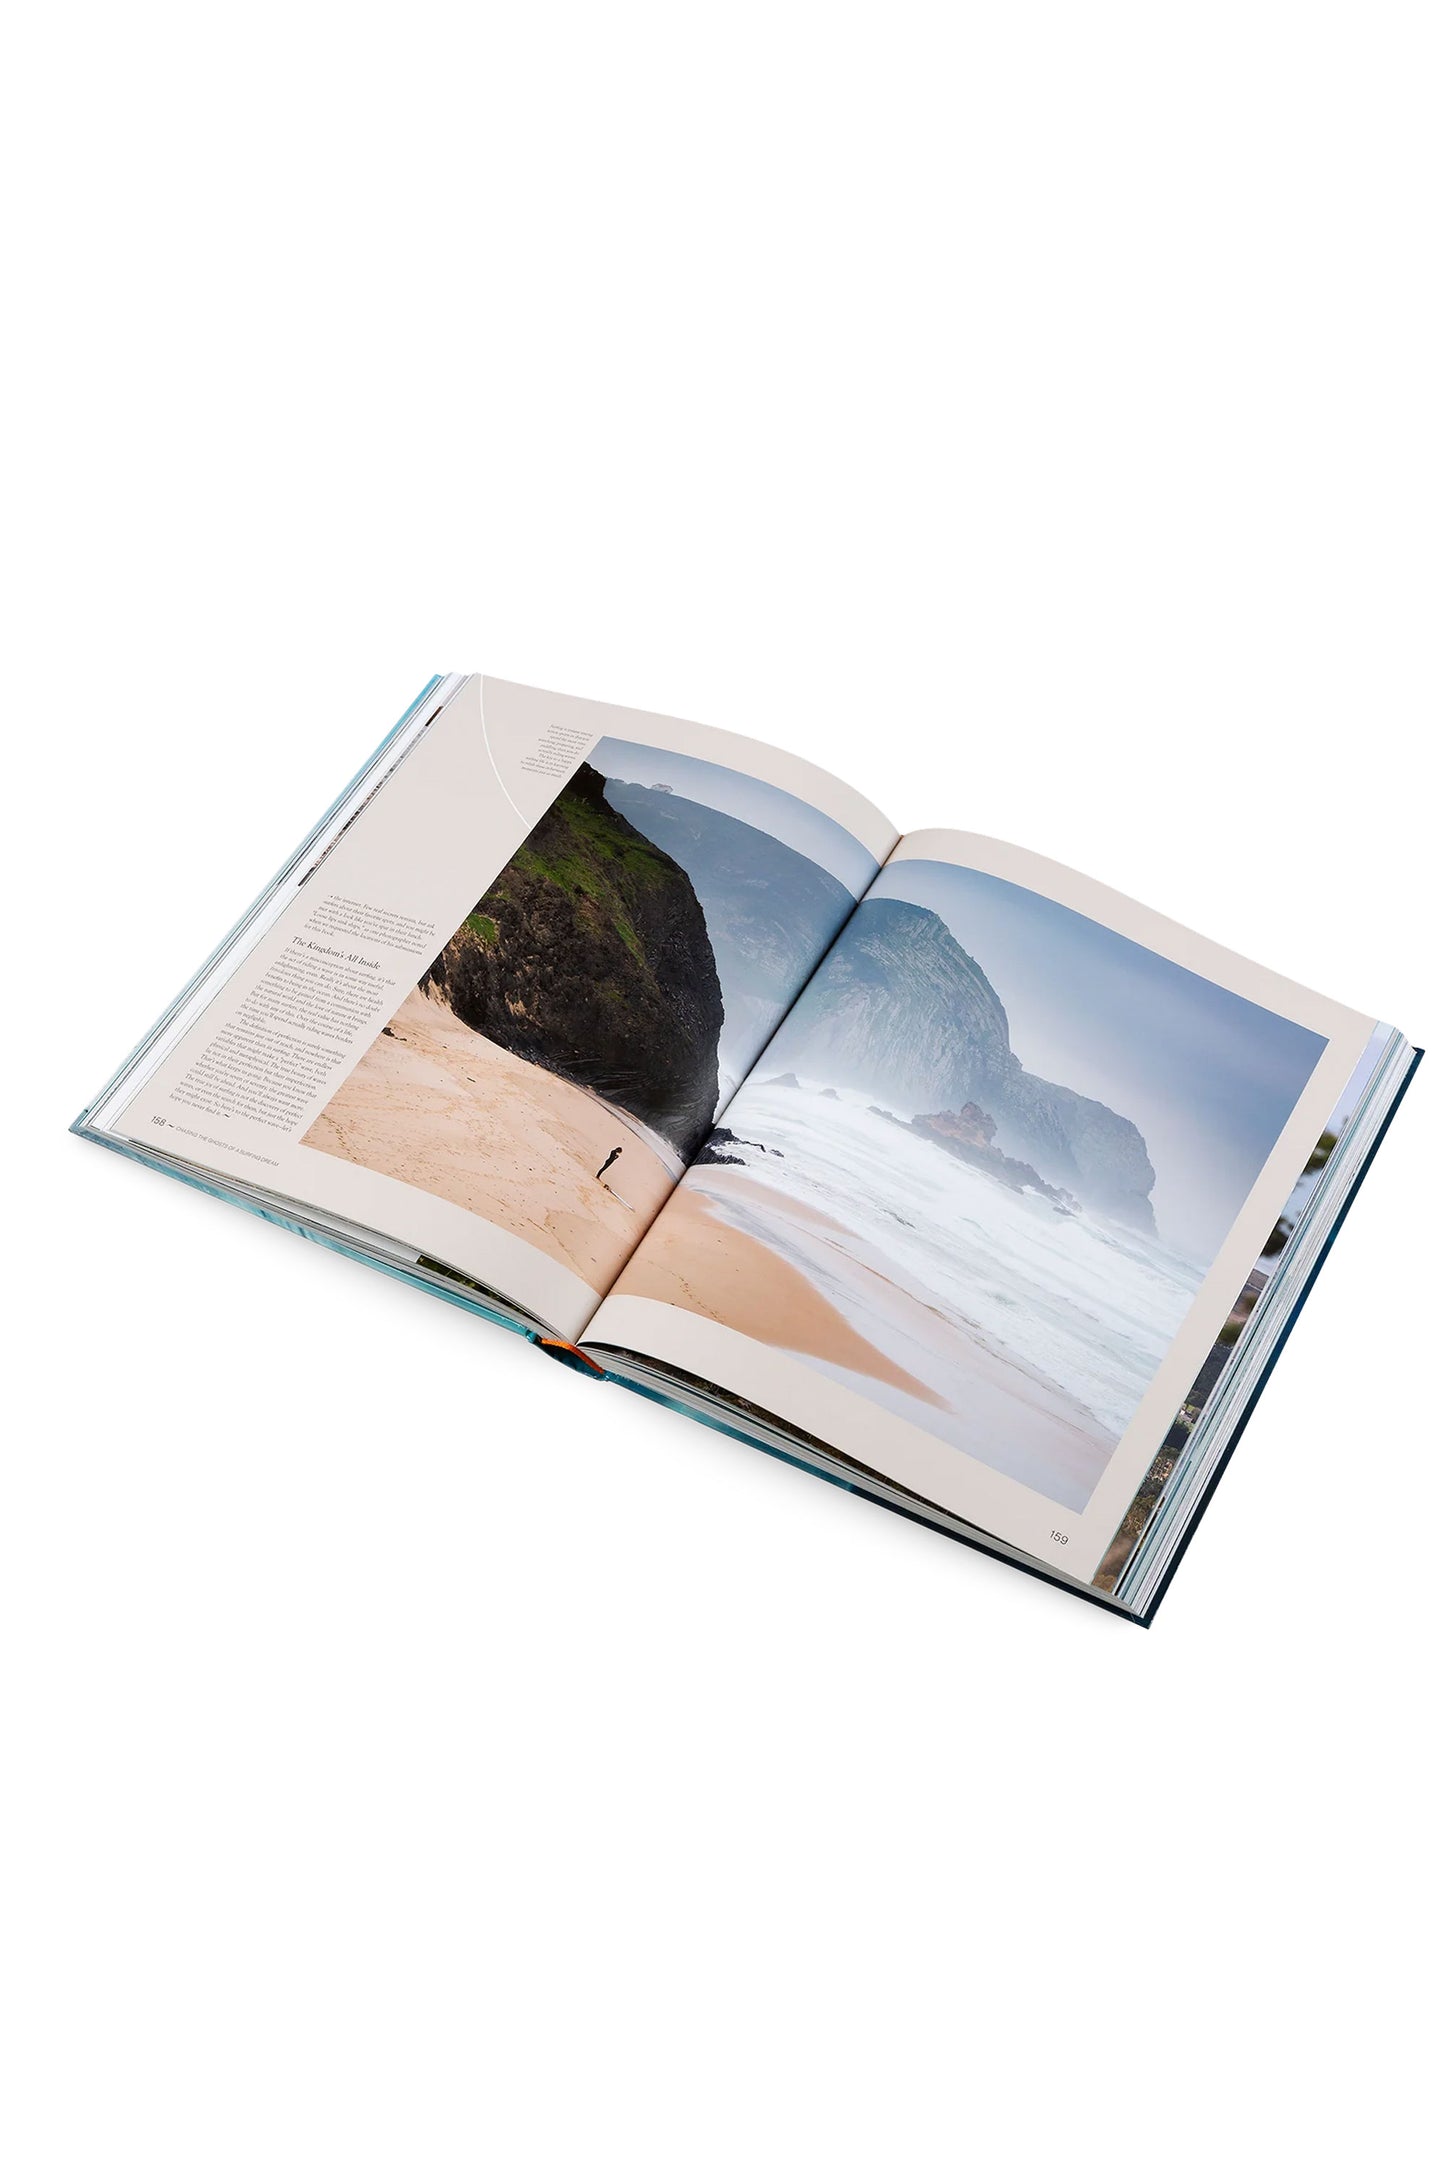 
                  
                    Pukas-Surf-Shop-geltalten-the-surf-atlas-book
                  
                